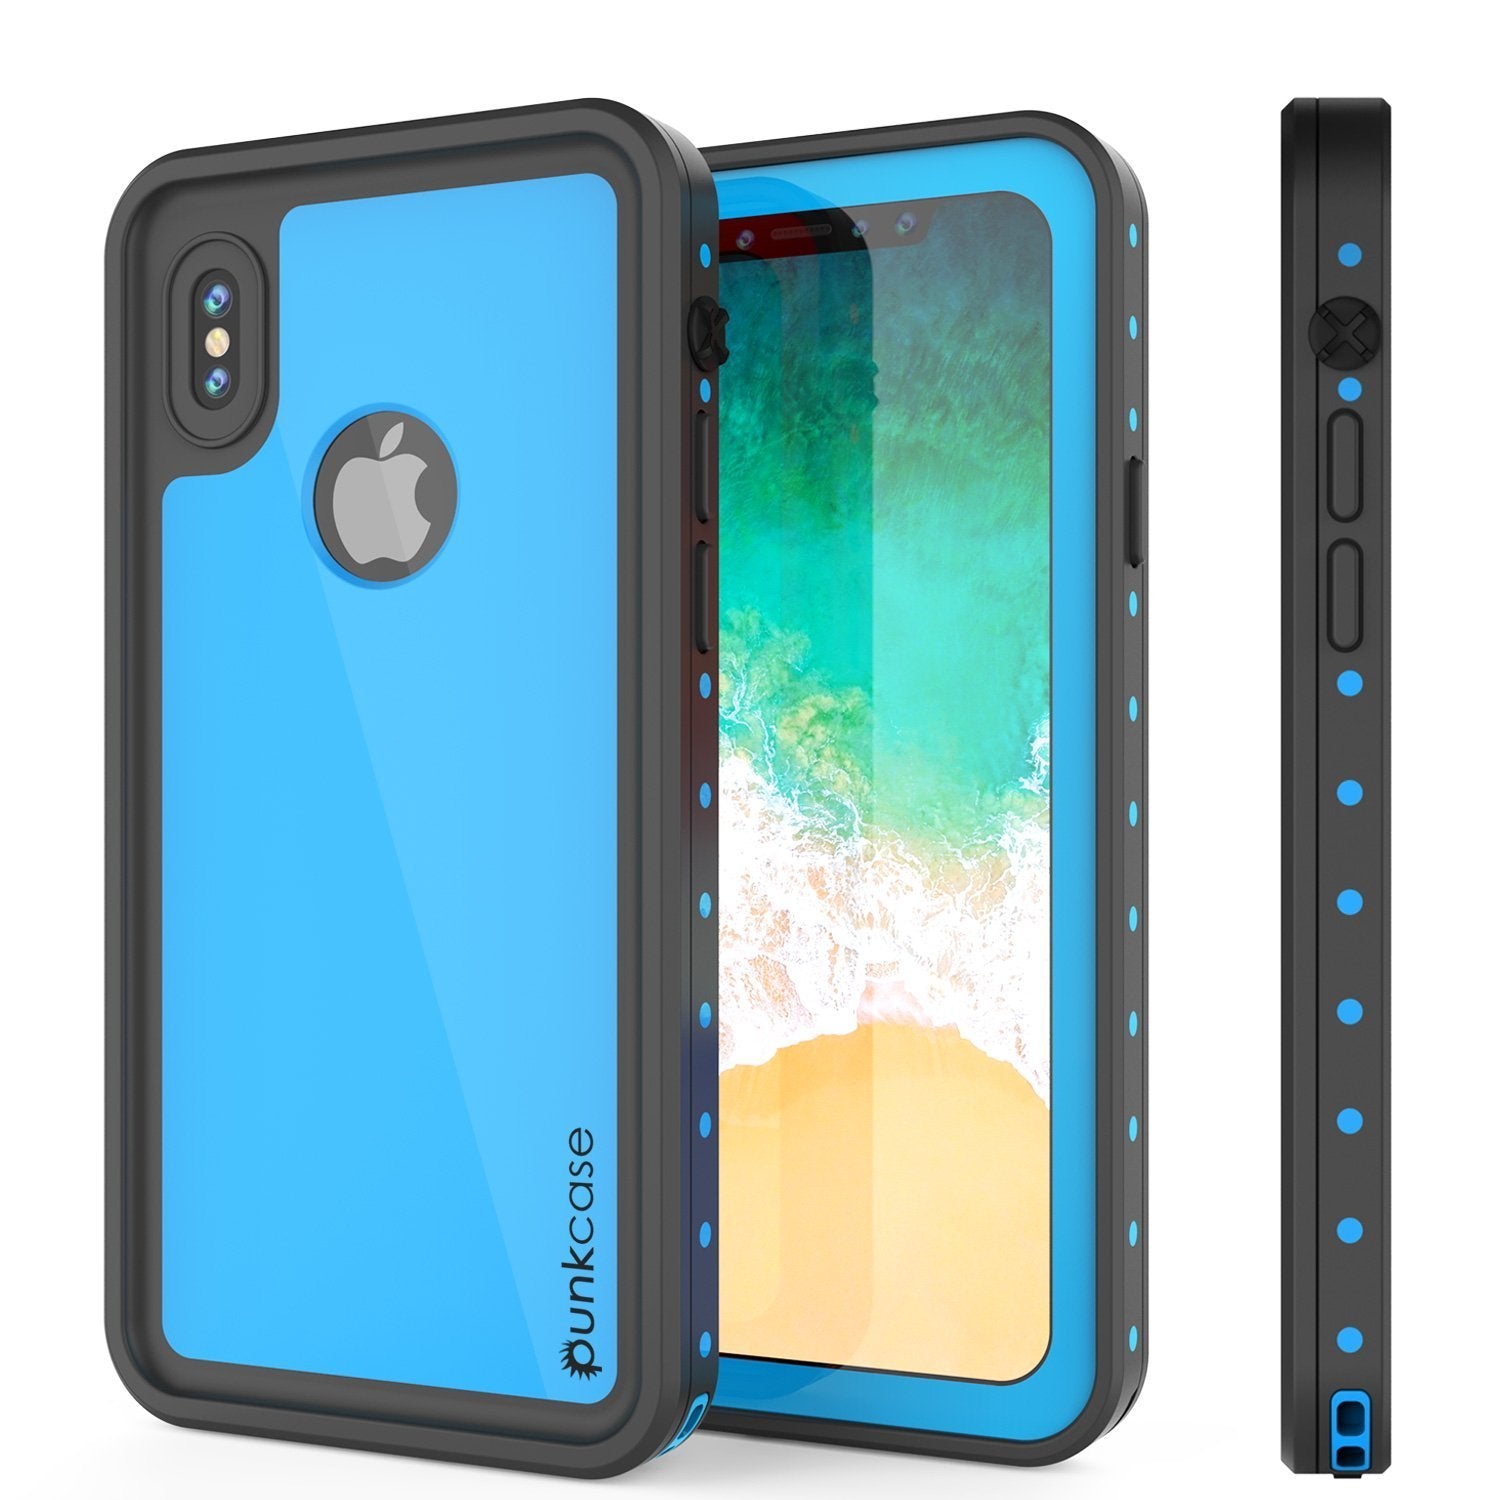 iPhone XR Waterproof IP68 Case, Punkcase [Light blue] [StudStar Series] [Slim Fit] [Dirtproof]